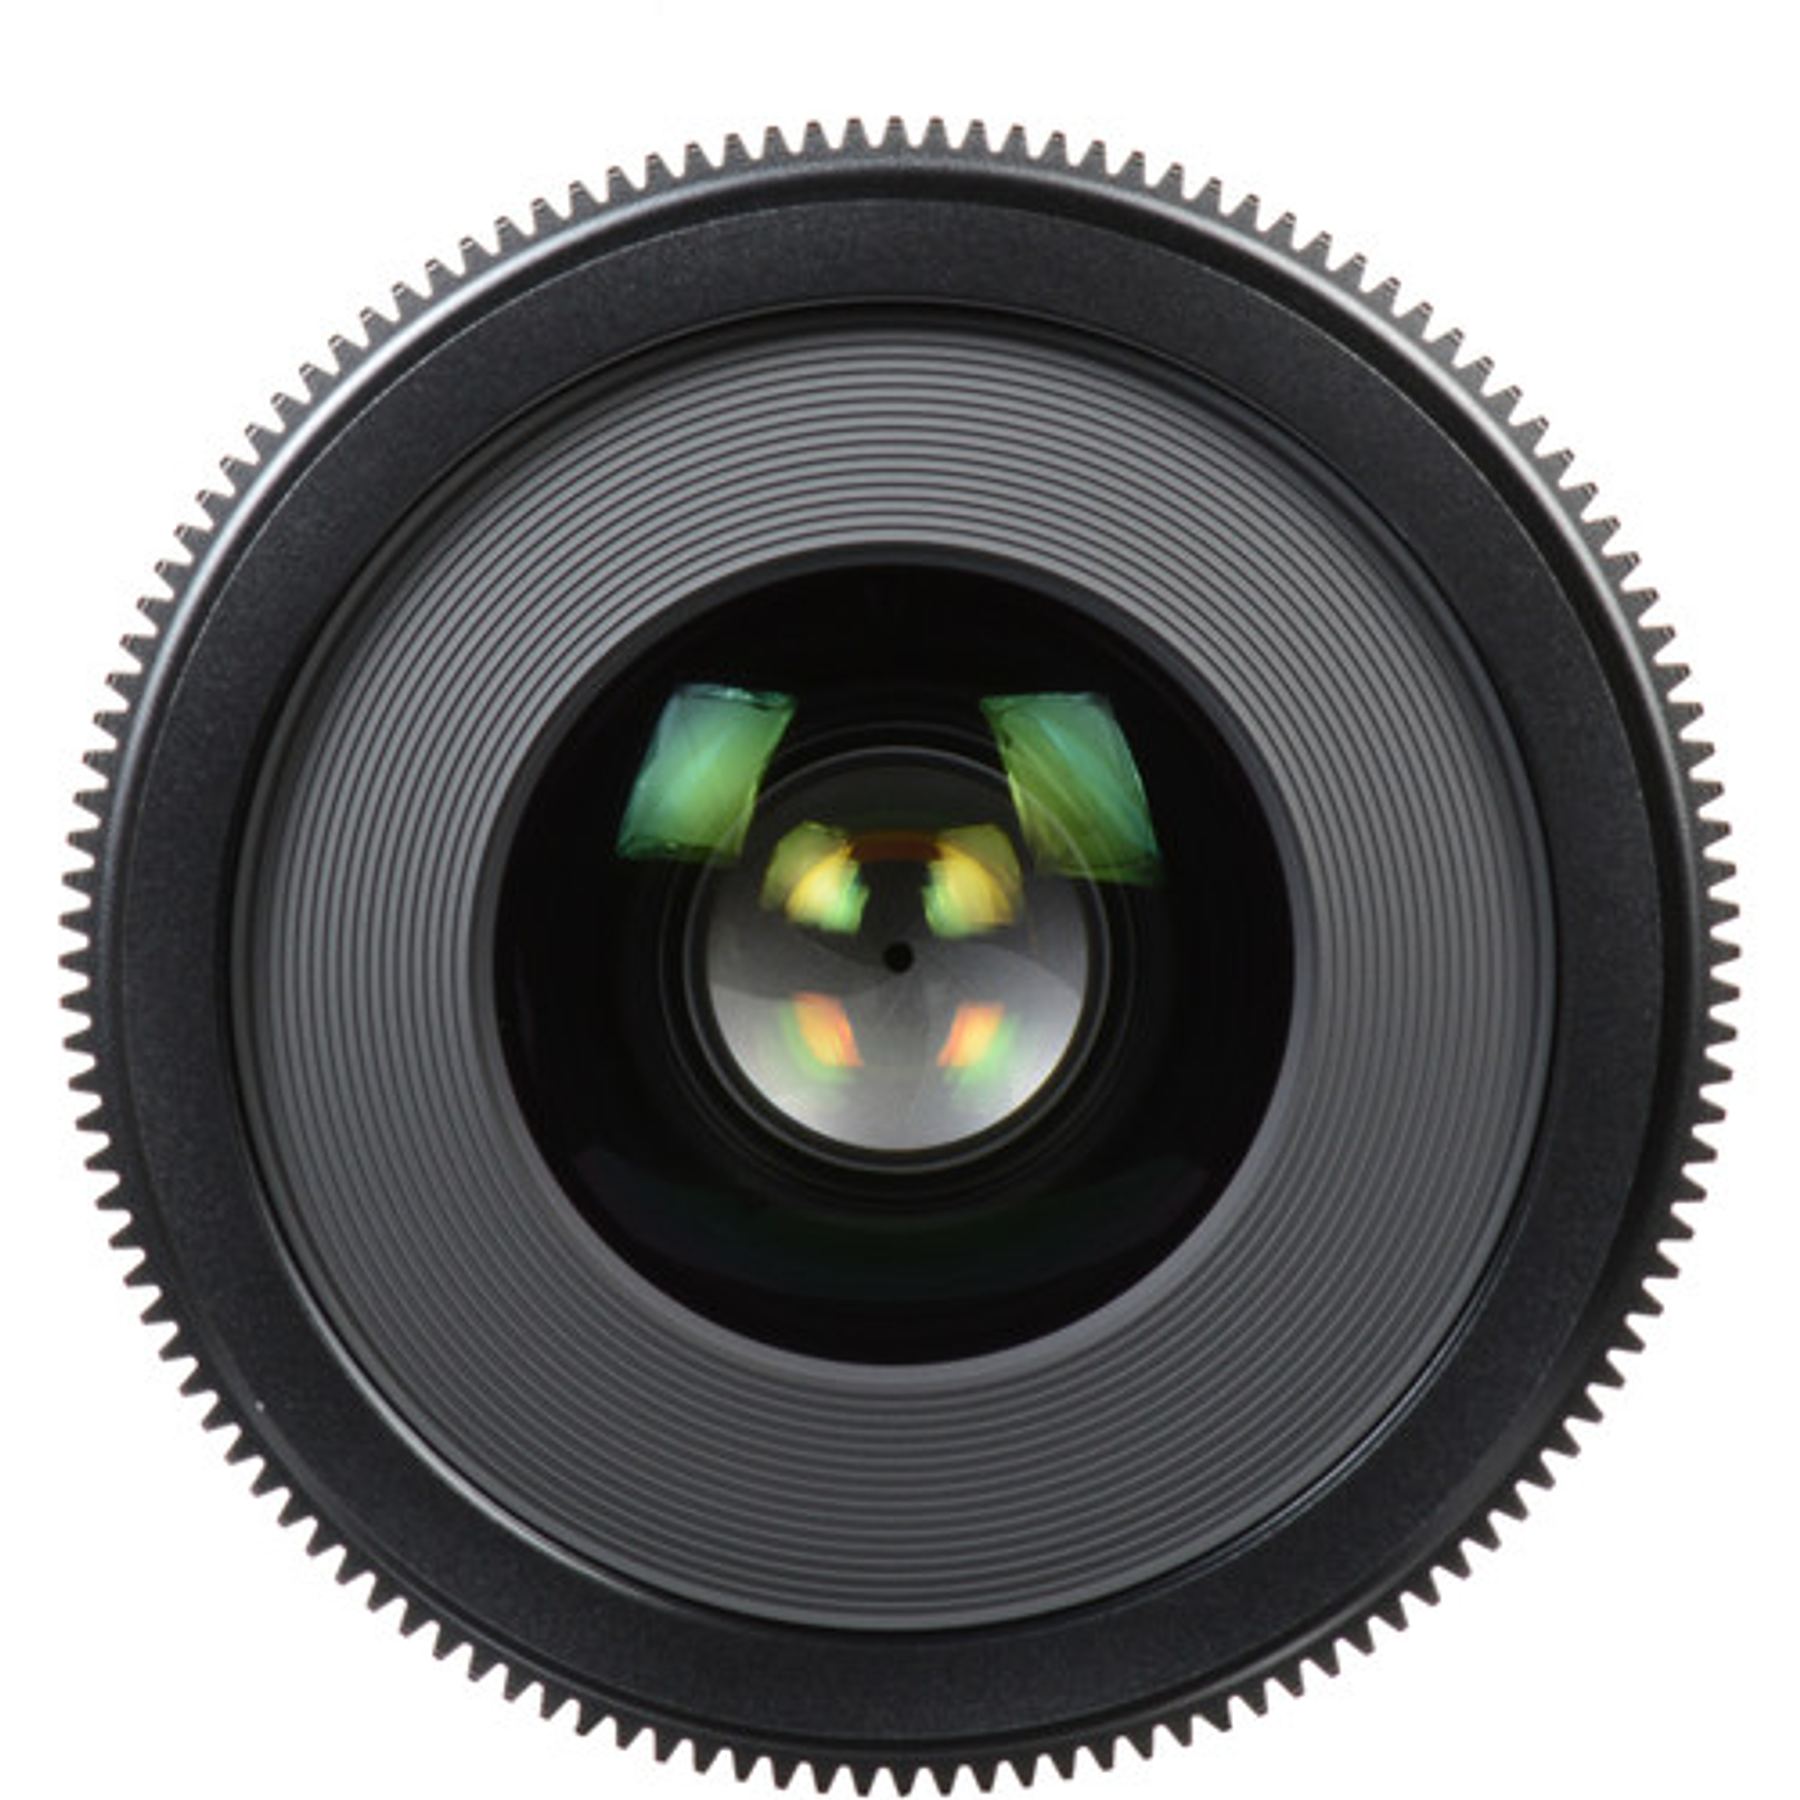 Lente Cine Sigma 35mm T1.5 FF (Canon/Sony) 